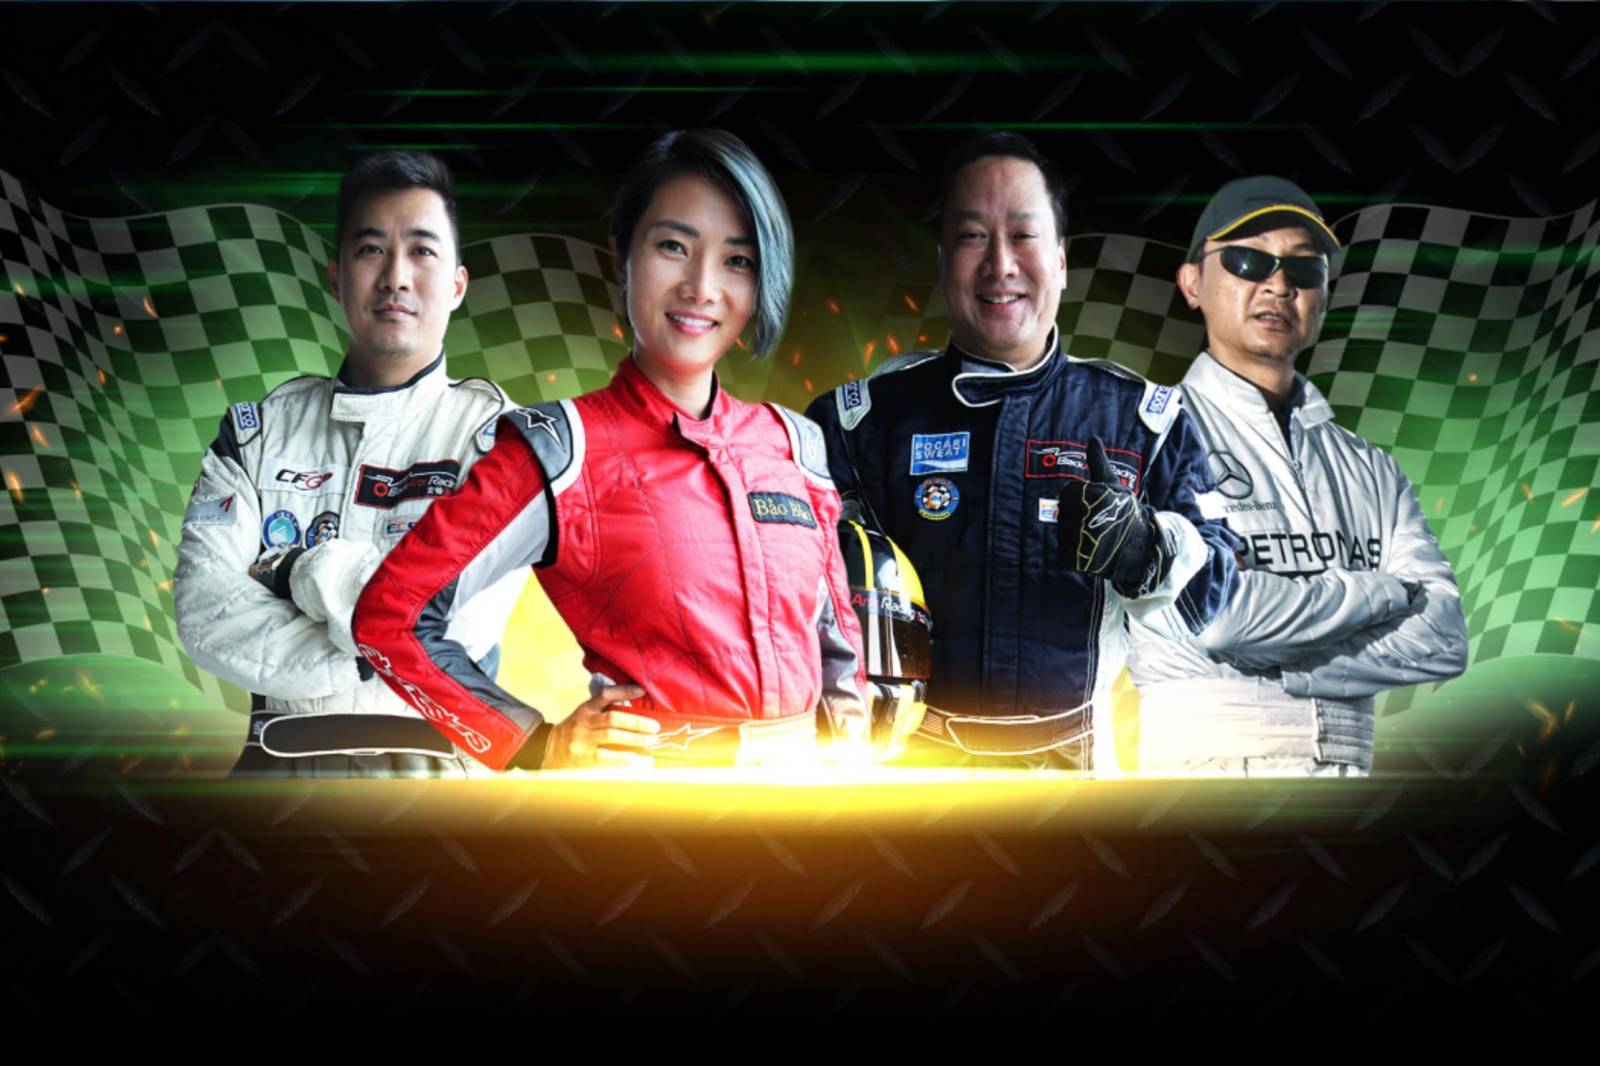 đua xe thể thao, đua xe chuyên nghiệp, Vietnam Racing Academy, VR Academy, Học viện đua xe thể thao Việt Nam, Racing, Auto Racing, VR FESTIVAL, Vietnam Racing Festival, ngày hội đua xe thể thao, khám phá giới hạn, Go Kart, Drifting